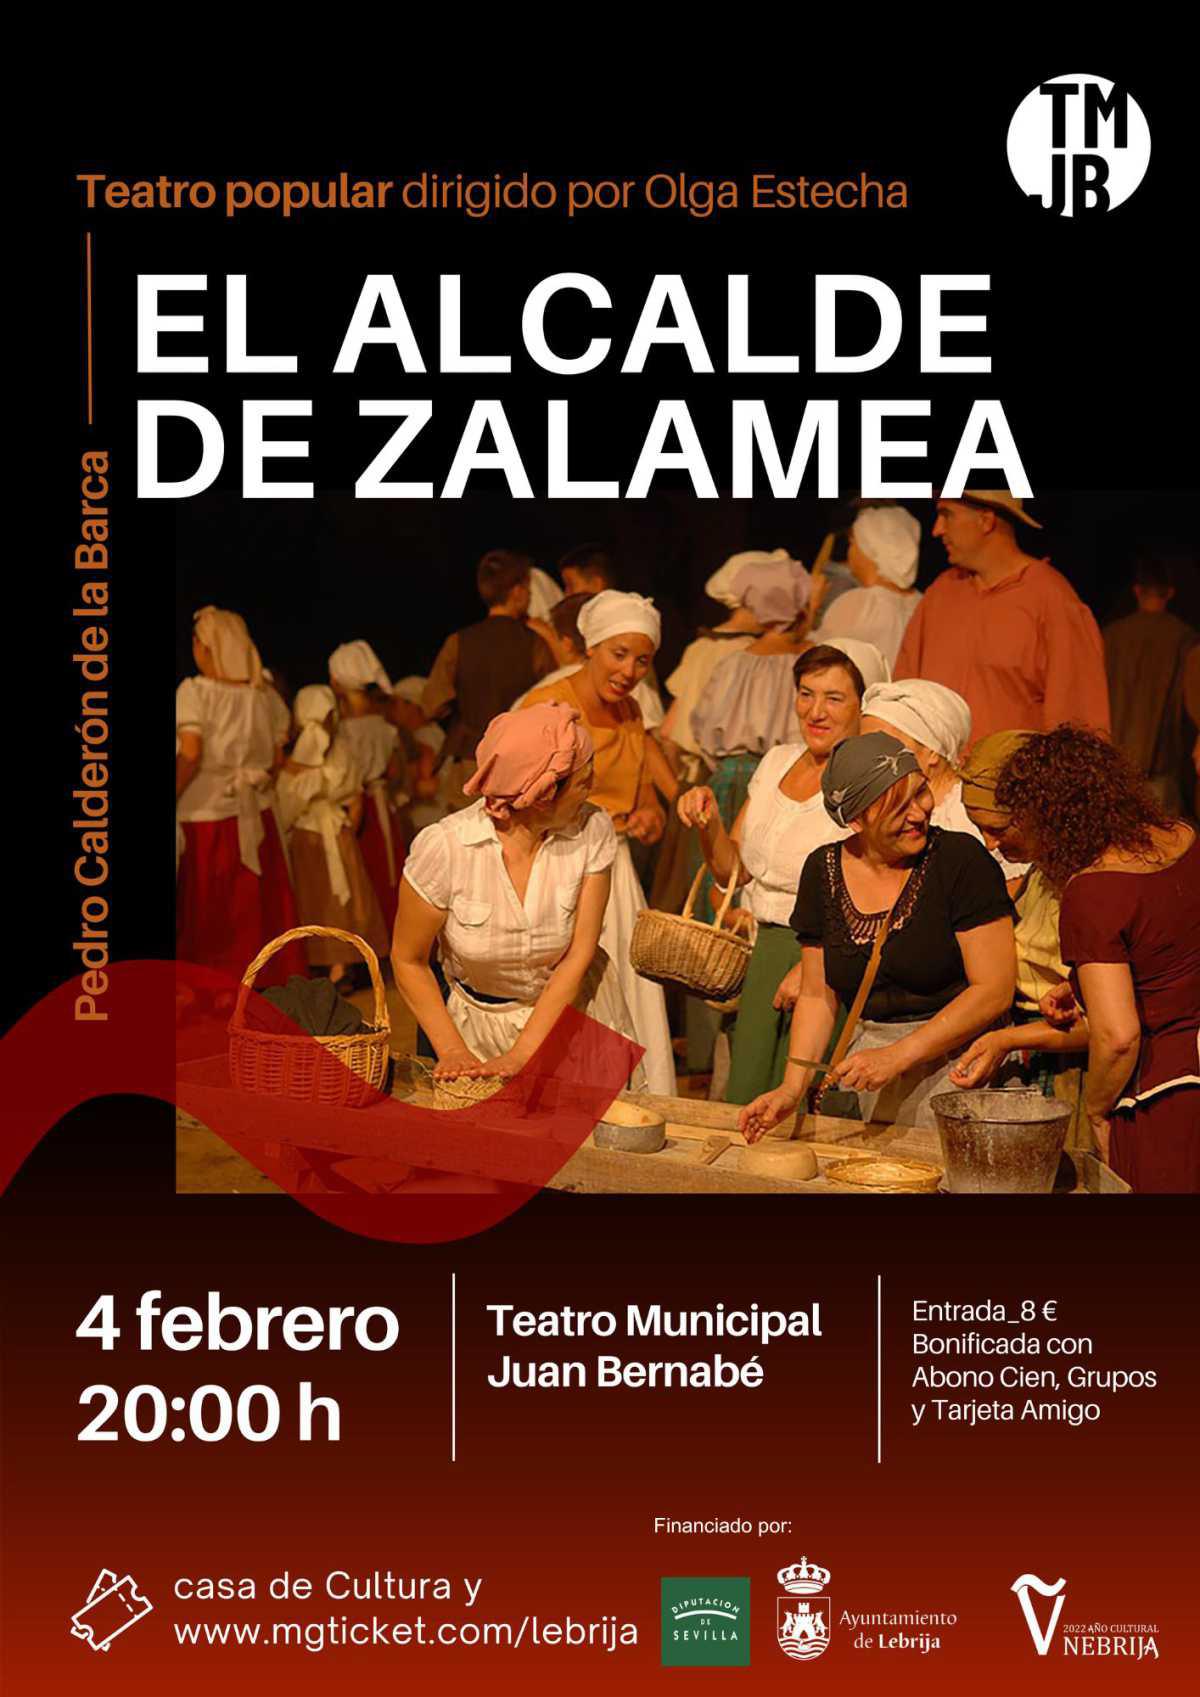  El Teatro Municipal Juan Bernabé acogerá este sábado la representación de la obra “El Alcalde de Zalamea”